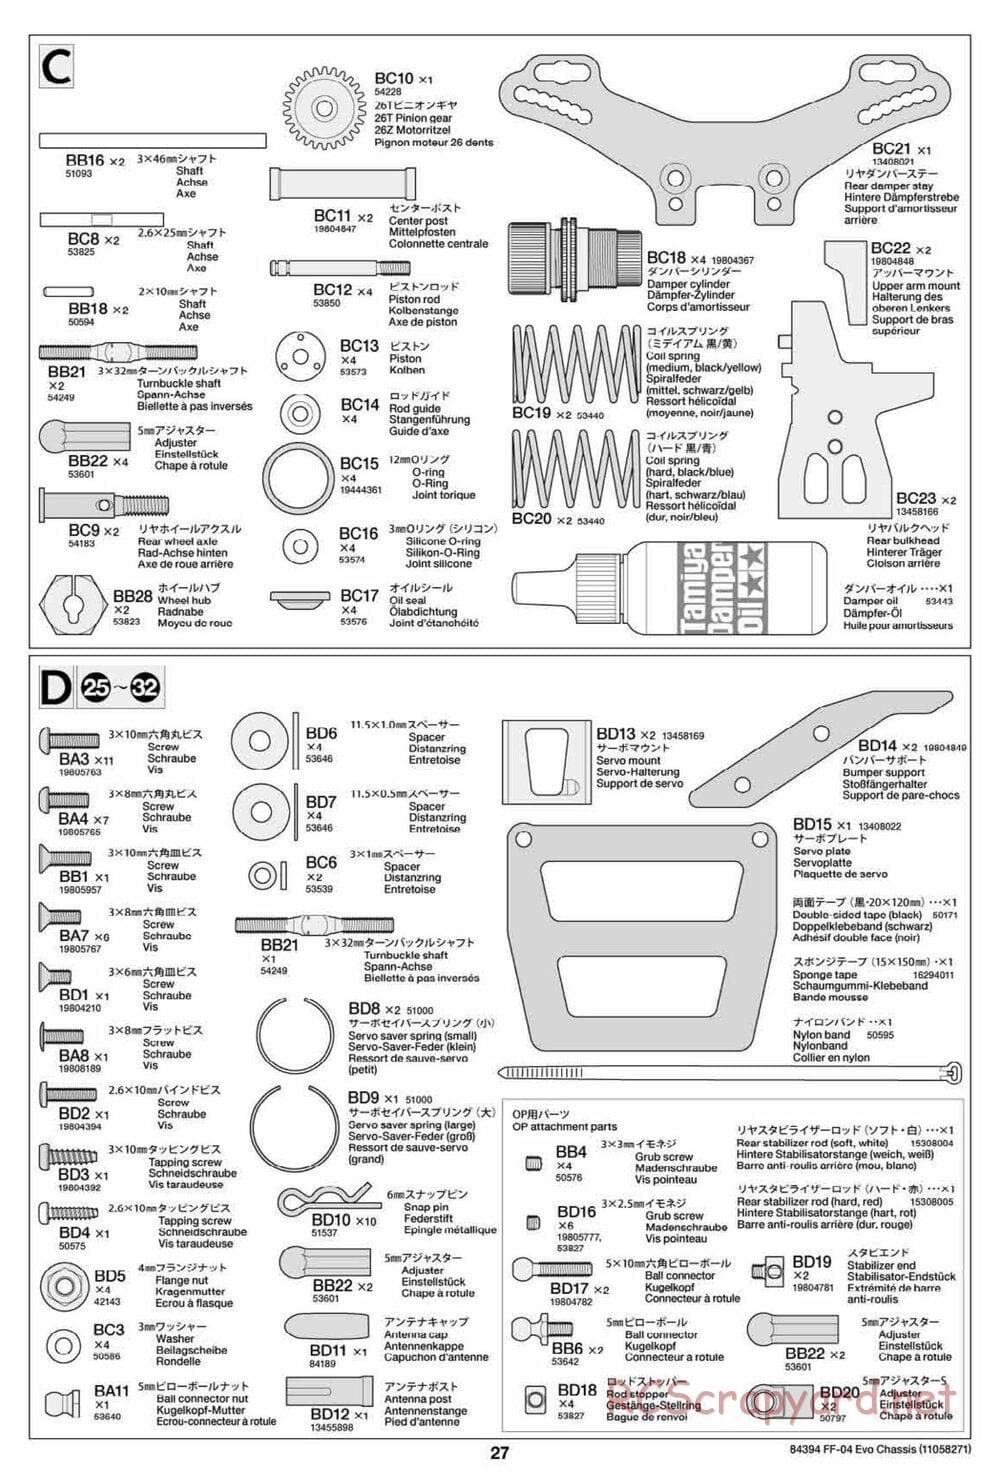 Tamiya - FF-04 Evo Chassis - Manual - Page 27